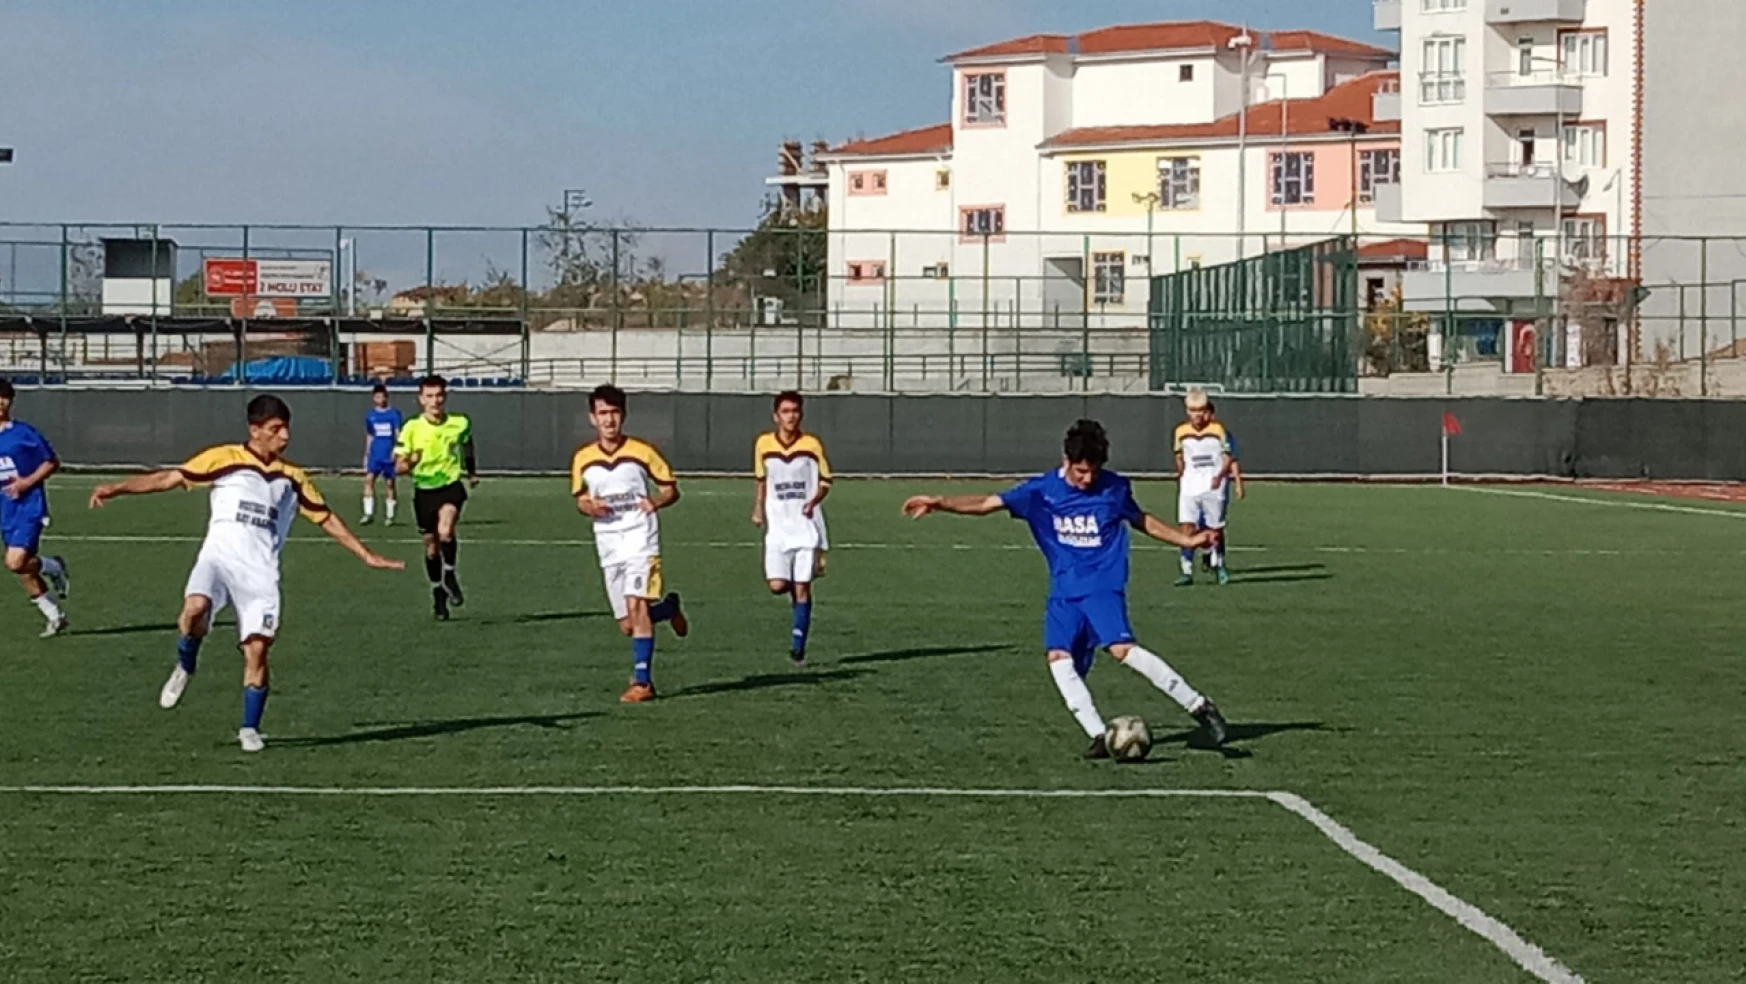 Malatya Adil Türk U 18 Gençler Futbol Ligi 12 Hafta Karşılaşmaları Bugün Oynandı.